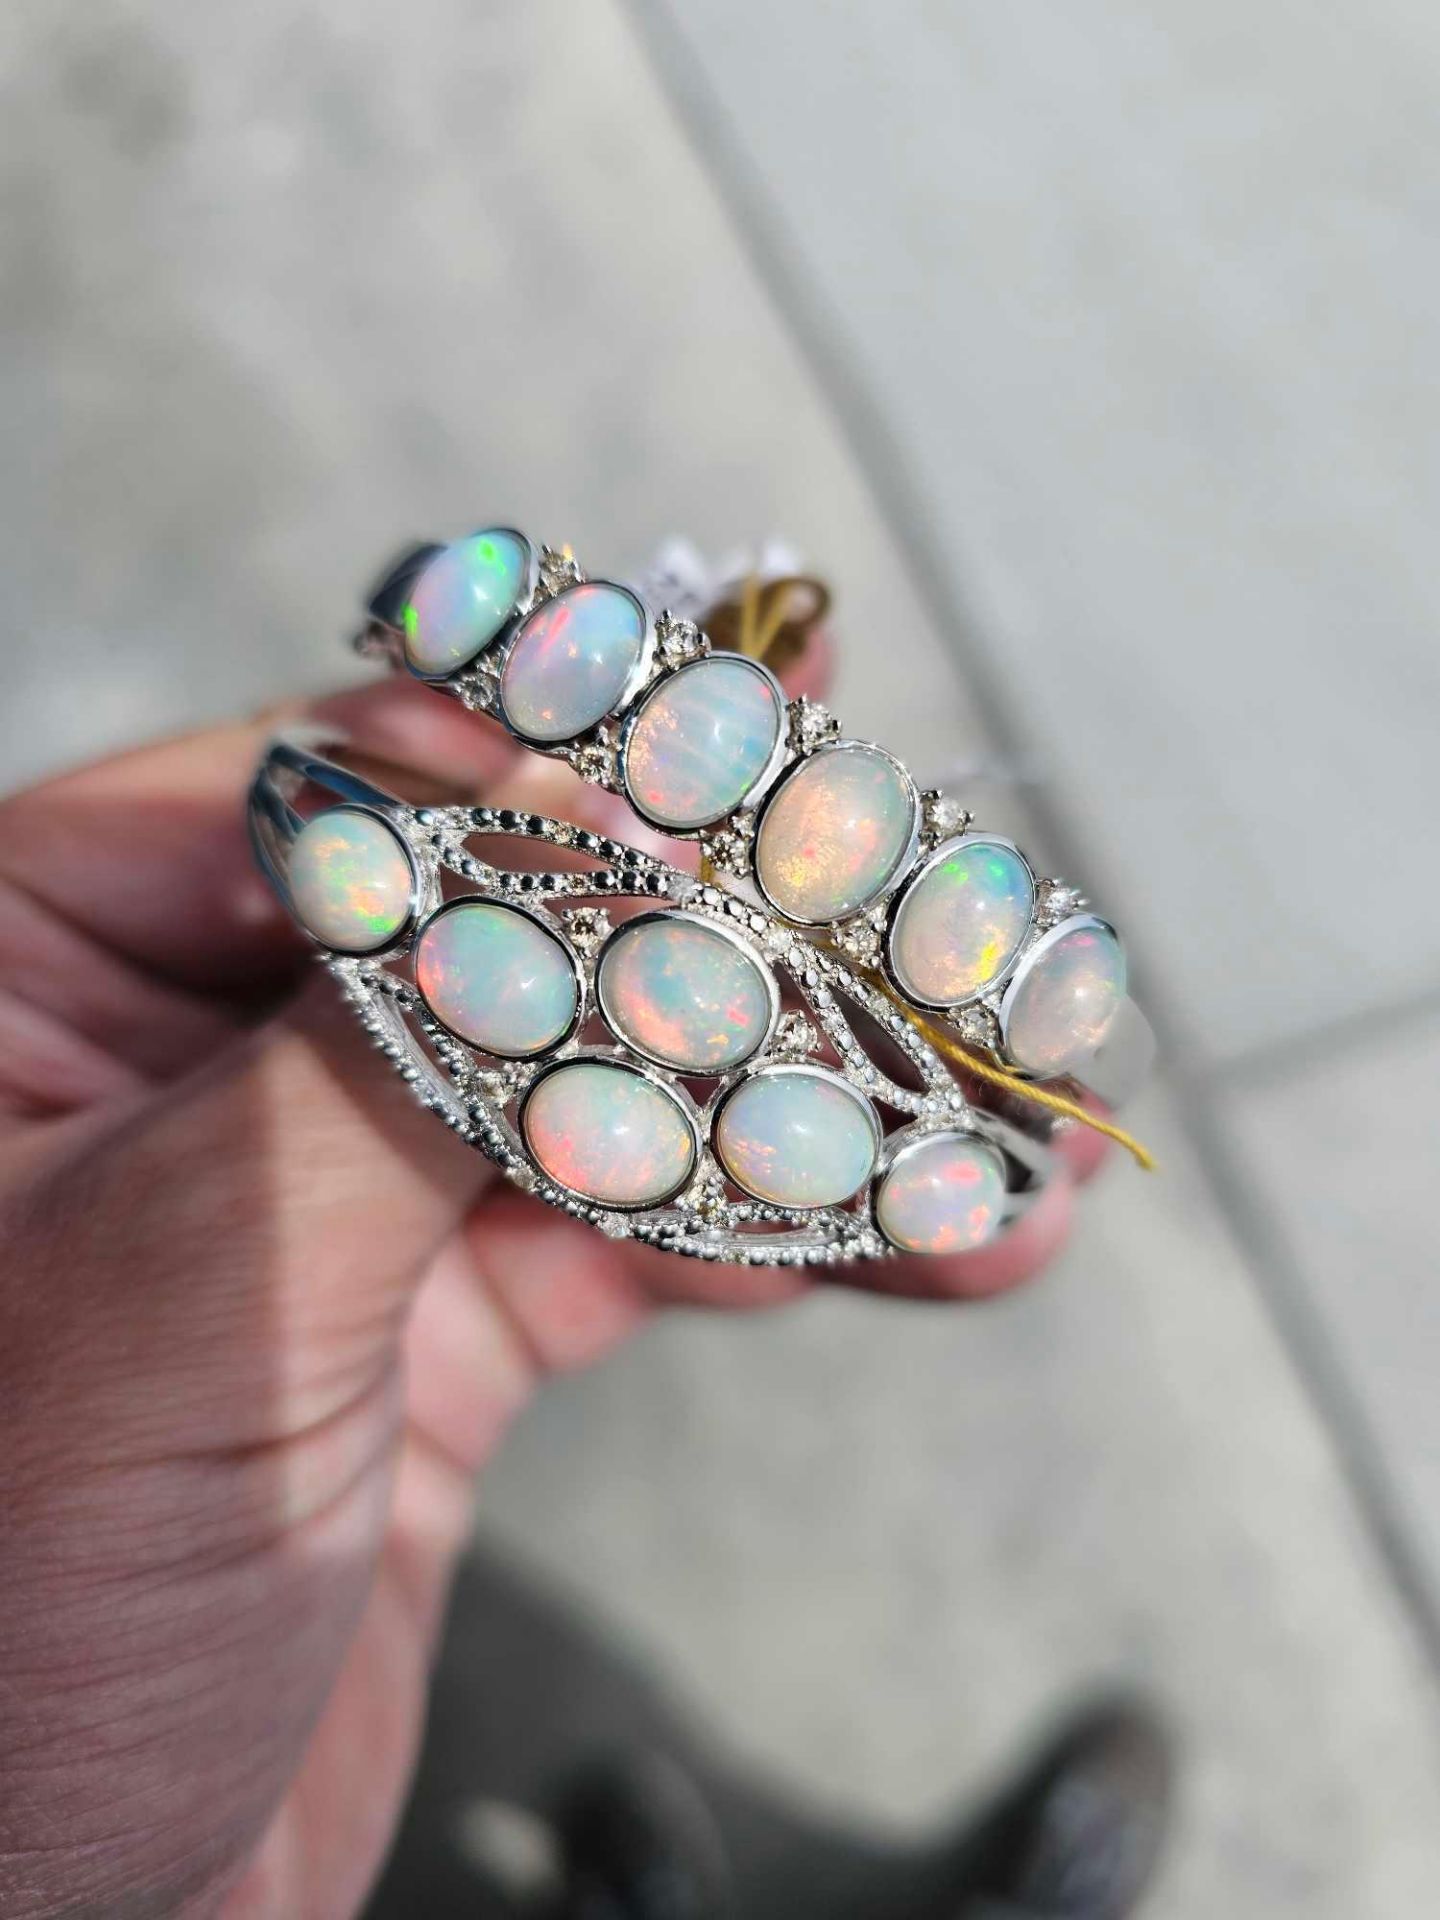 2 opal bracelets - Image 2 of 7